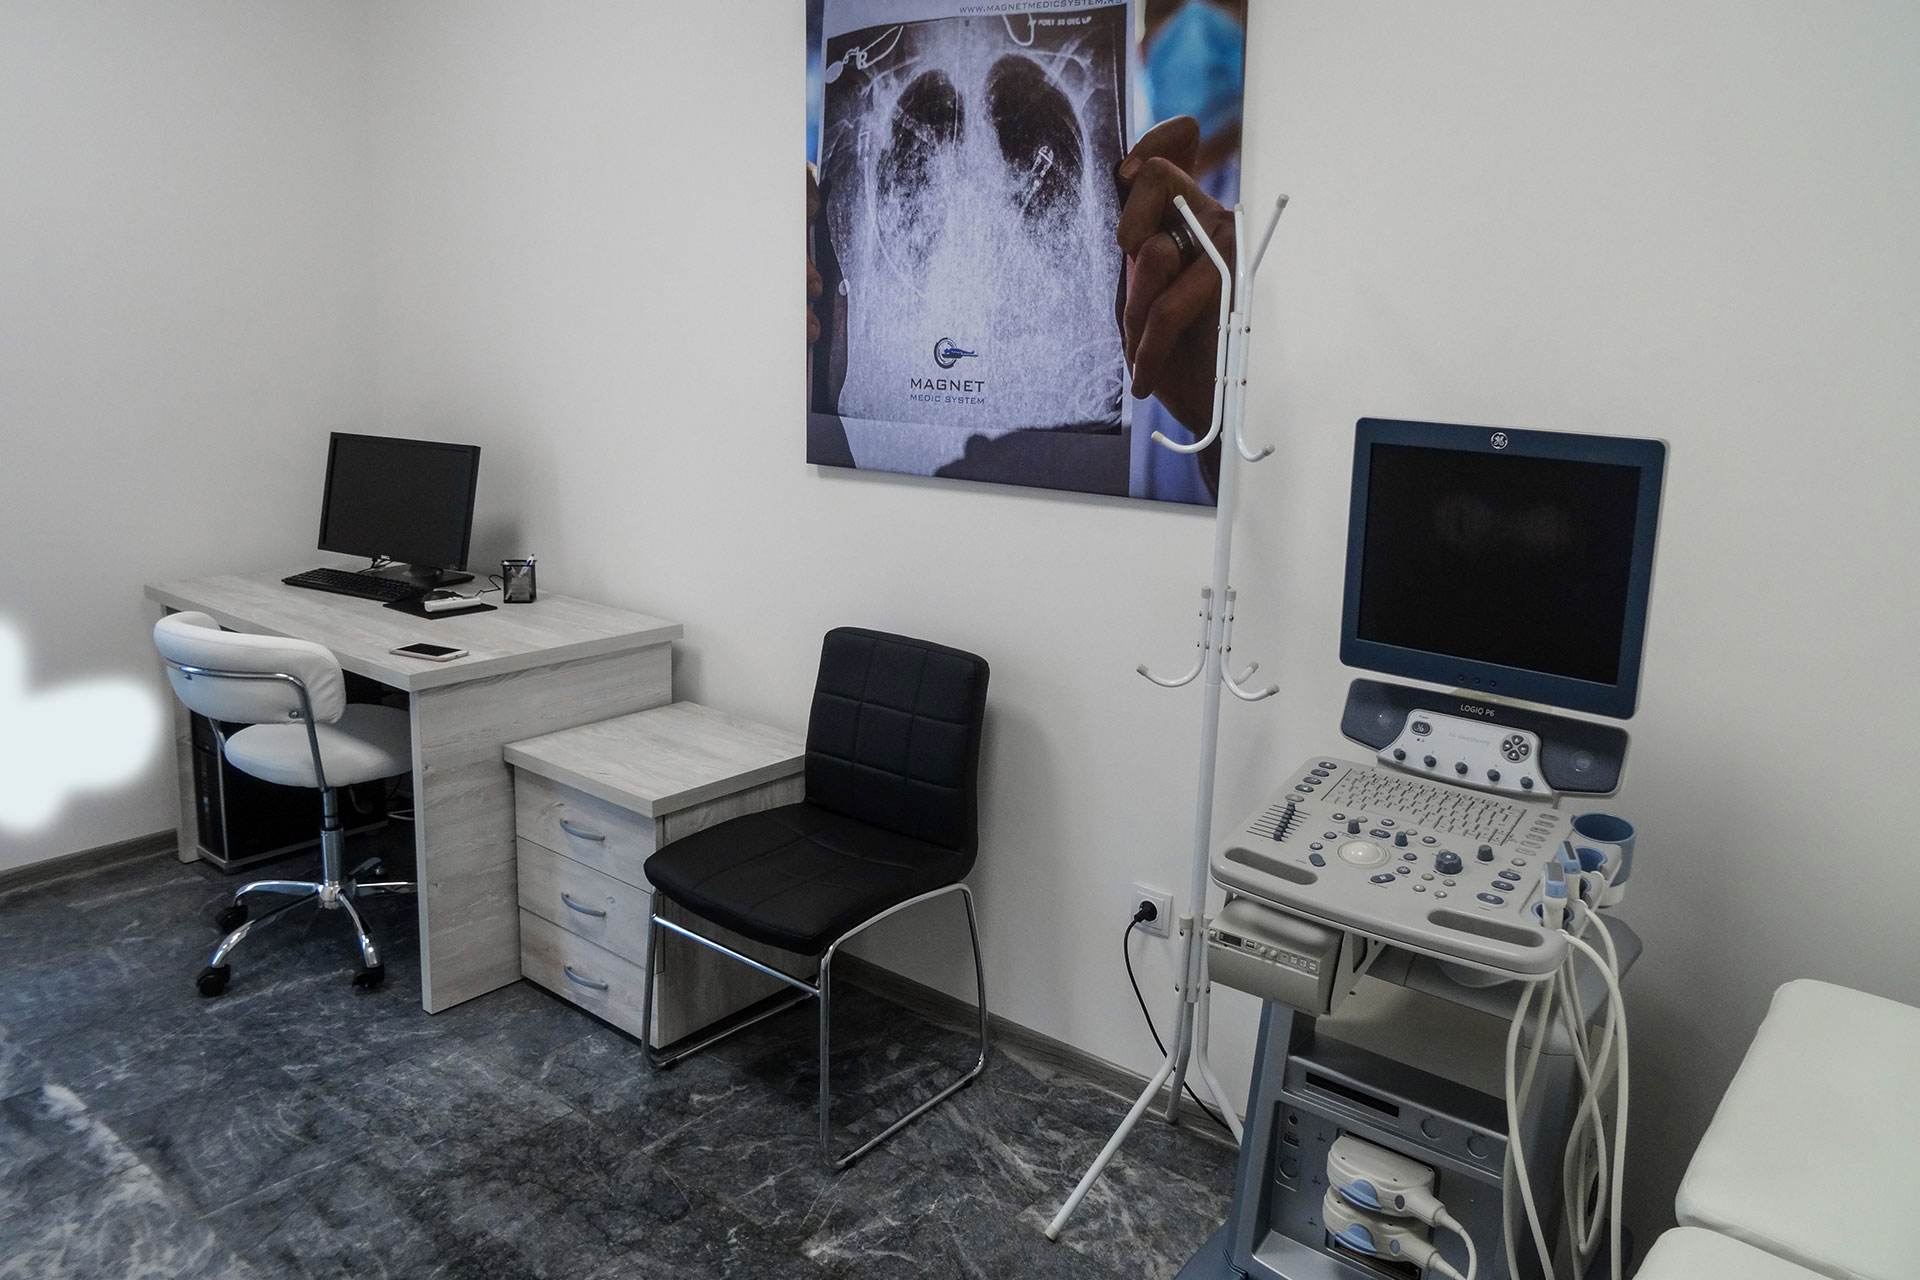 ultrazvuk Magnet Medic System Kraljevo